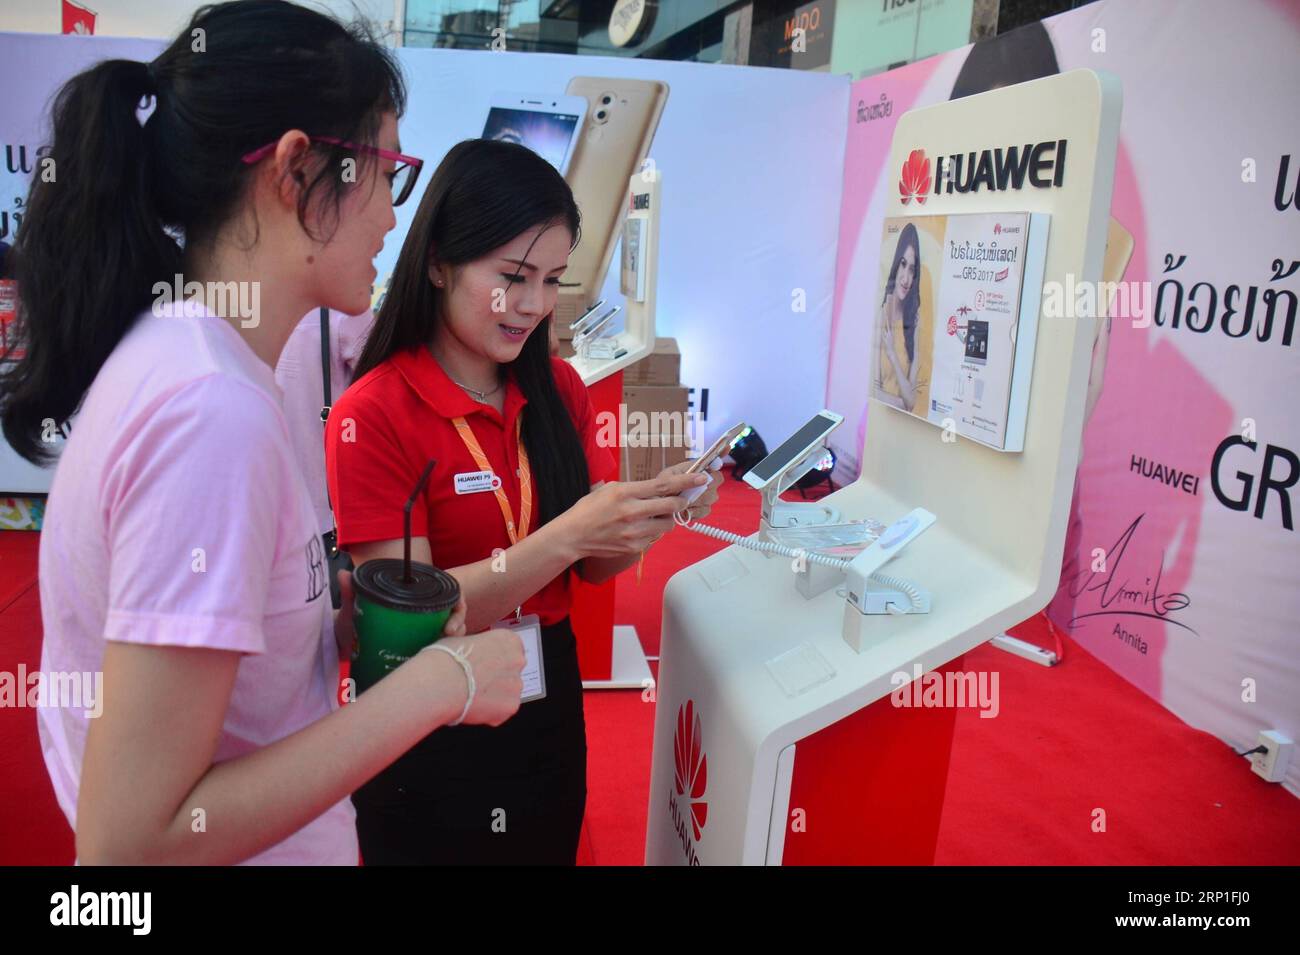 (180703) -- PECHINO, 3 luglio 2018 -- Un membro dello staff presenta uno smartphone Huawei a un cliente durante il suo evento di lancio a Vientiane, Laos, 17 dicembre 2016. (TO GO WITH Xinhua Headlines: How Lancang-Mekong Cooperation is Changing the region) ) (jmmn) Xinhua Headlines: How Lancang-Mekong Cooperation is Changing the region LiuxAilun PUBLICATIONxNOTxINxCHN Foto Stock